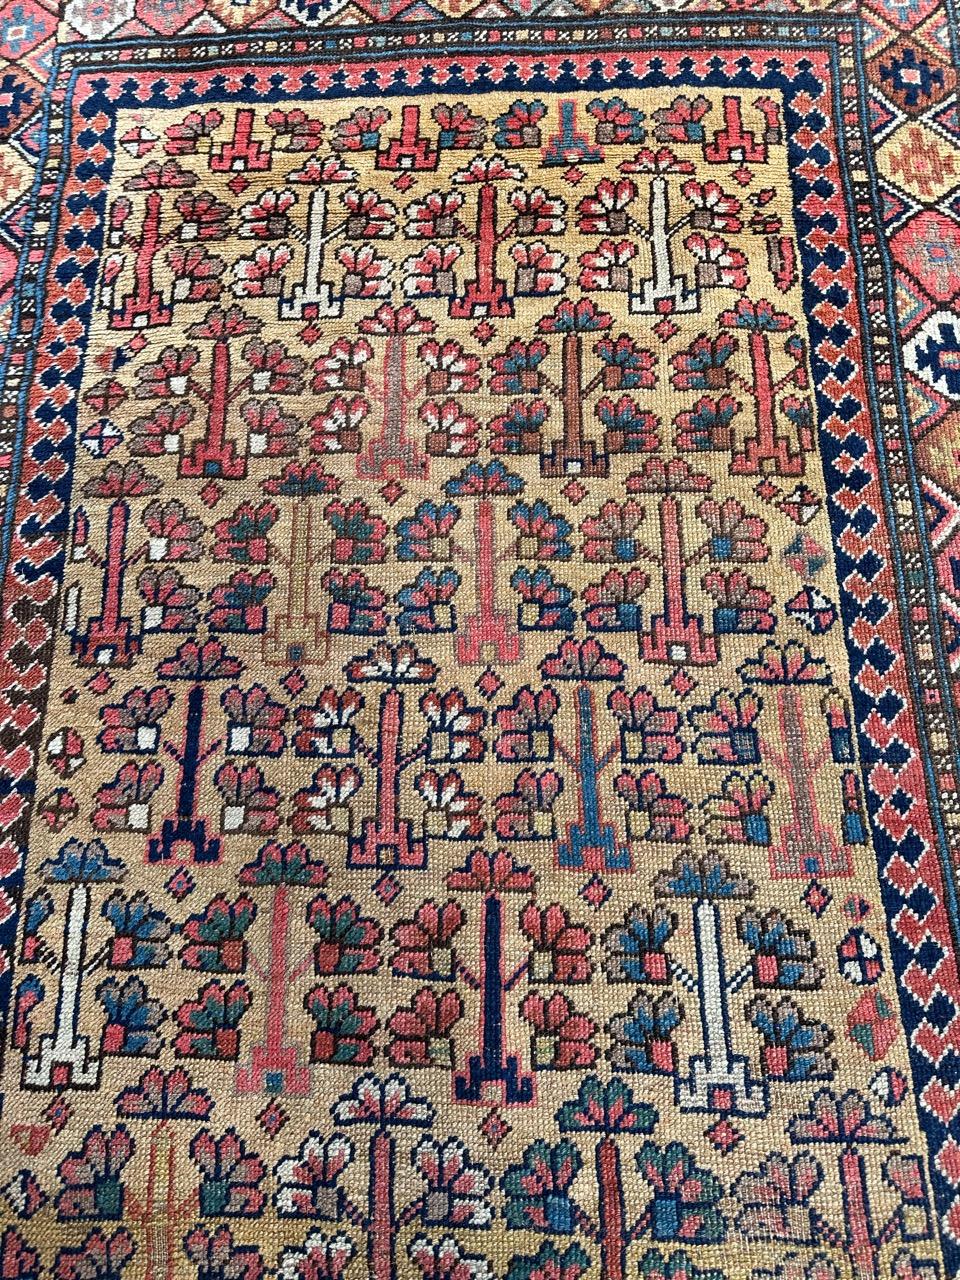 Kazakh Merveilleux tapis tribal ancien de collection kurde ou caucasien en vente